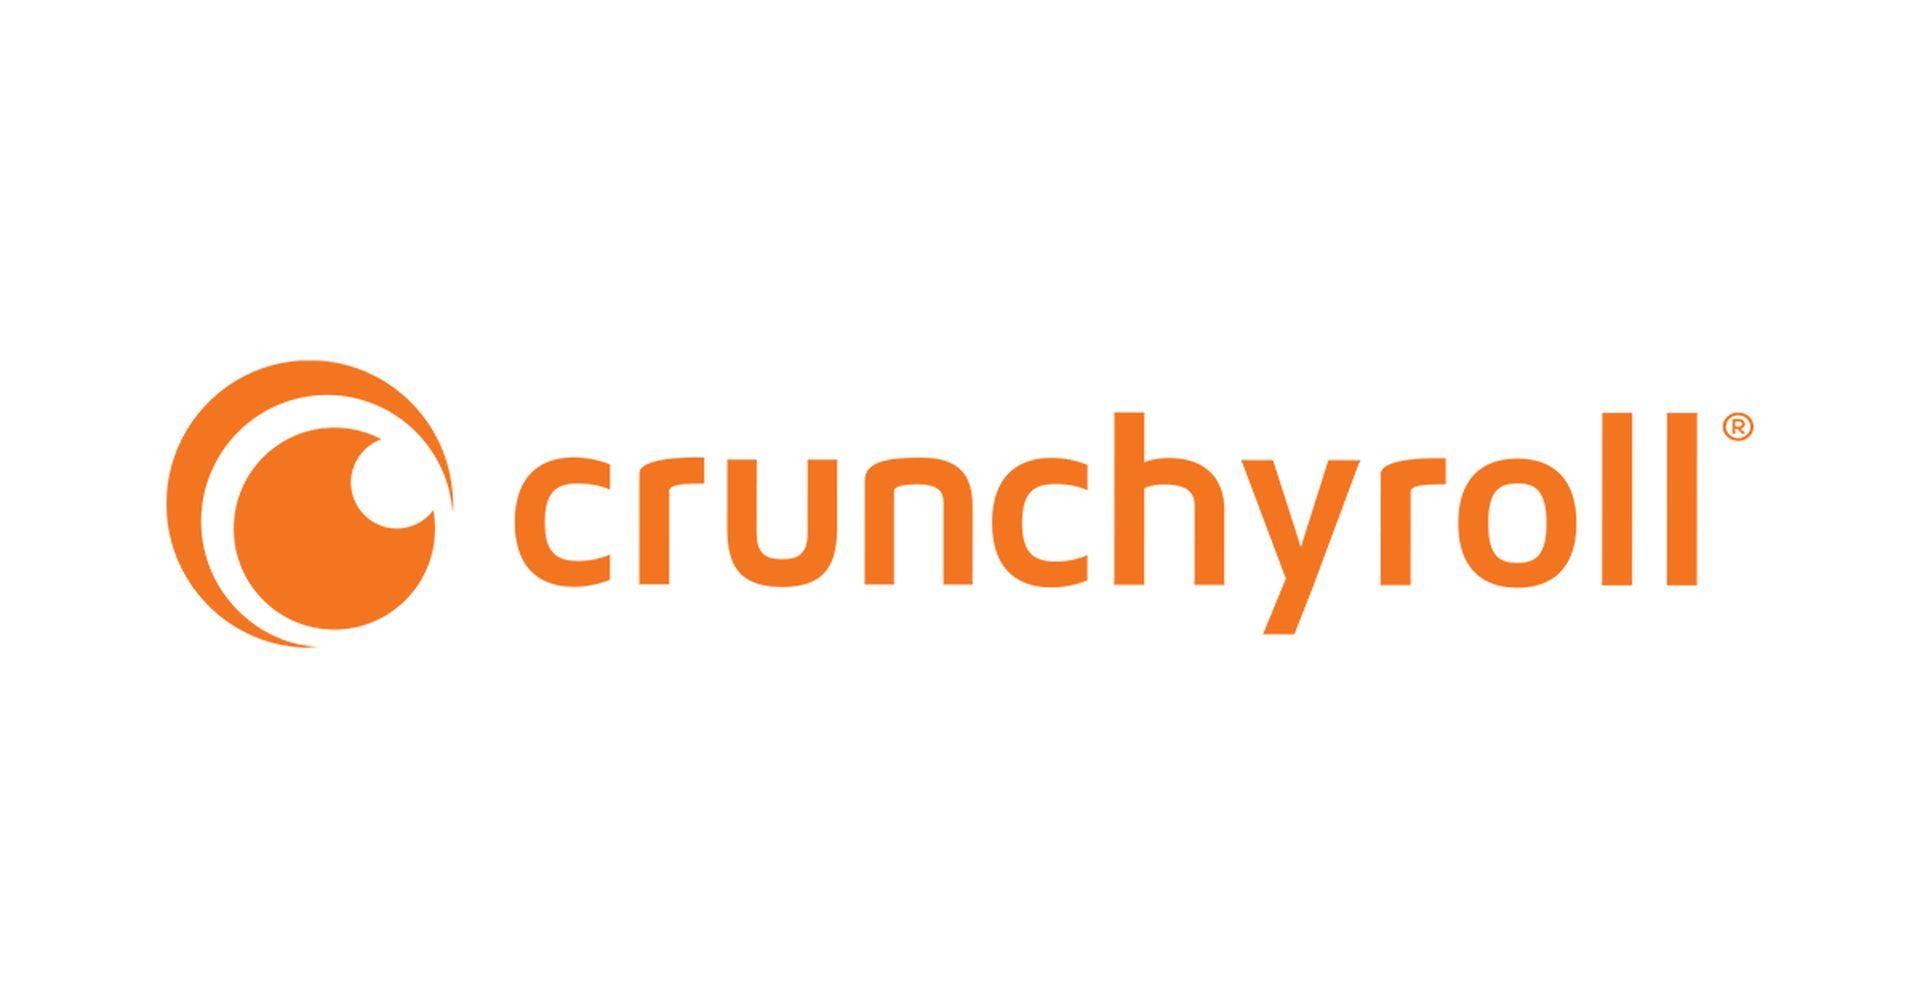 Corregido: el próximo episodio de Crunchyroll es incorrecto / la reproducción automática no funciona